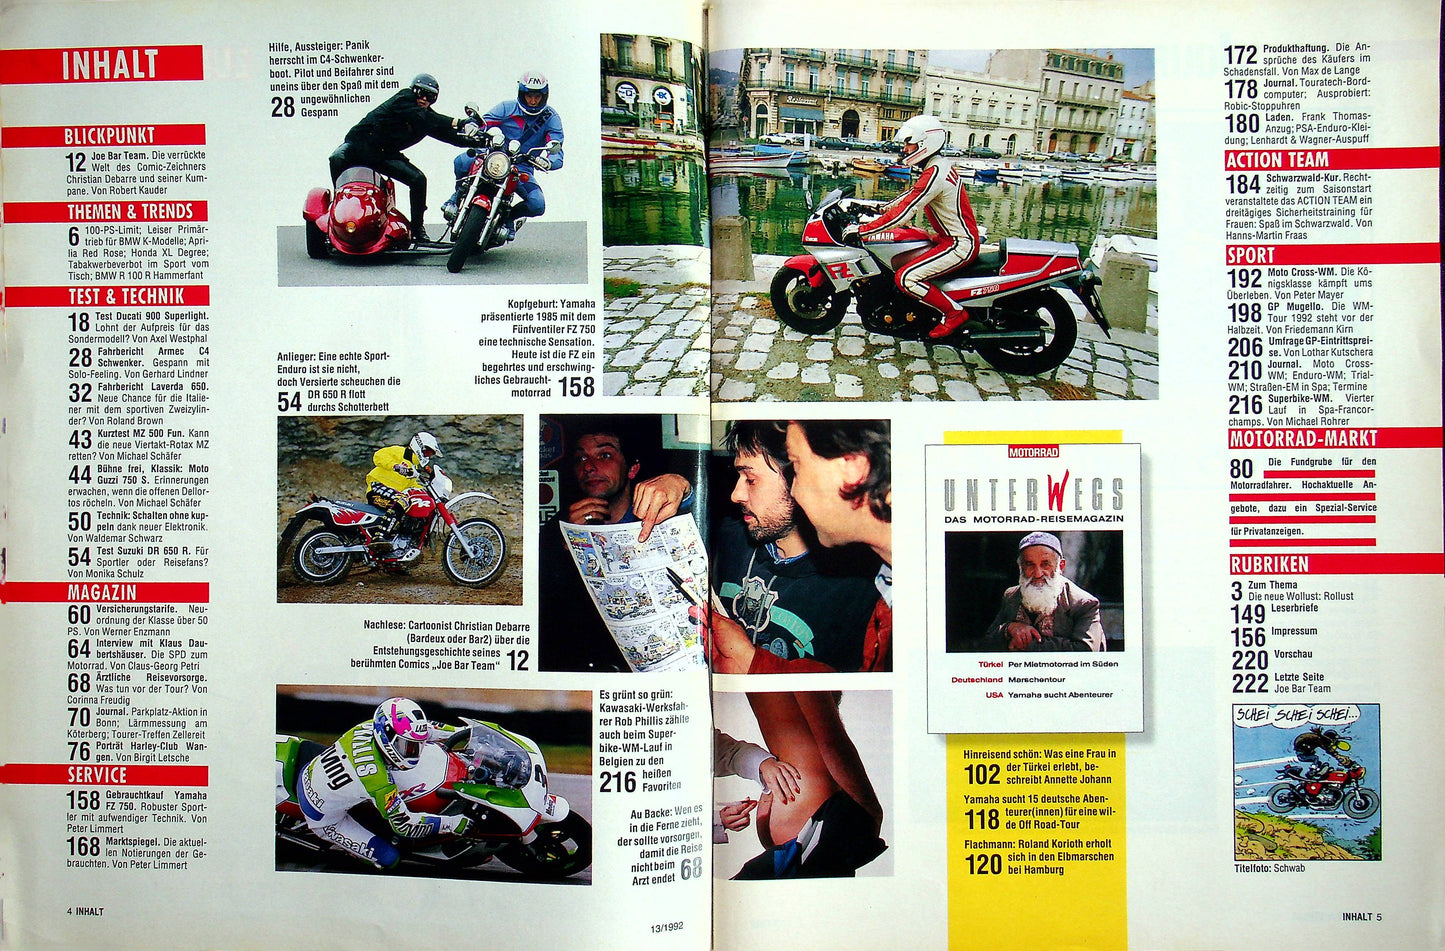 Motorrad 13/1992